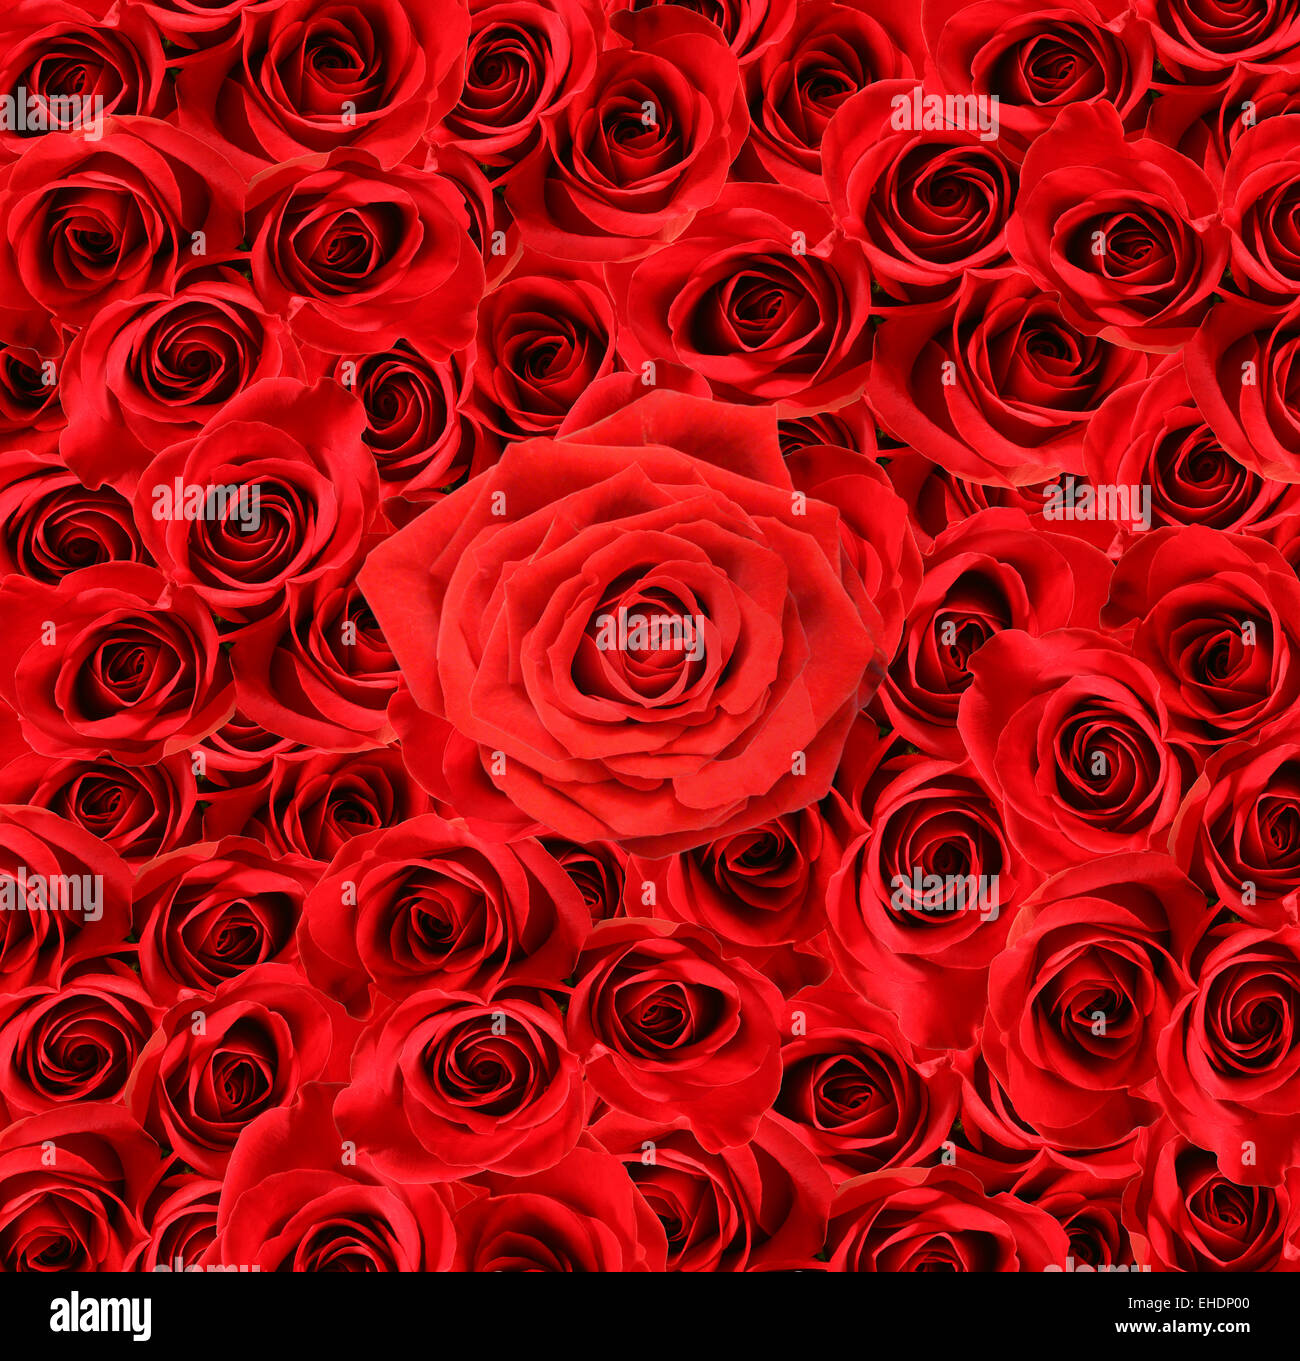 Grandi rose rosse immagini e fotografie stock ad alta risoluzione - Alamy